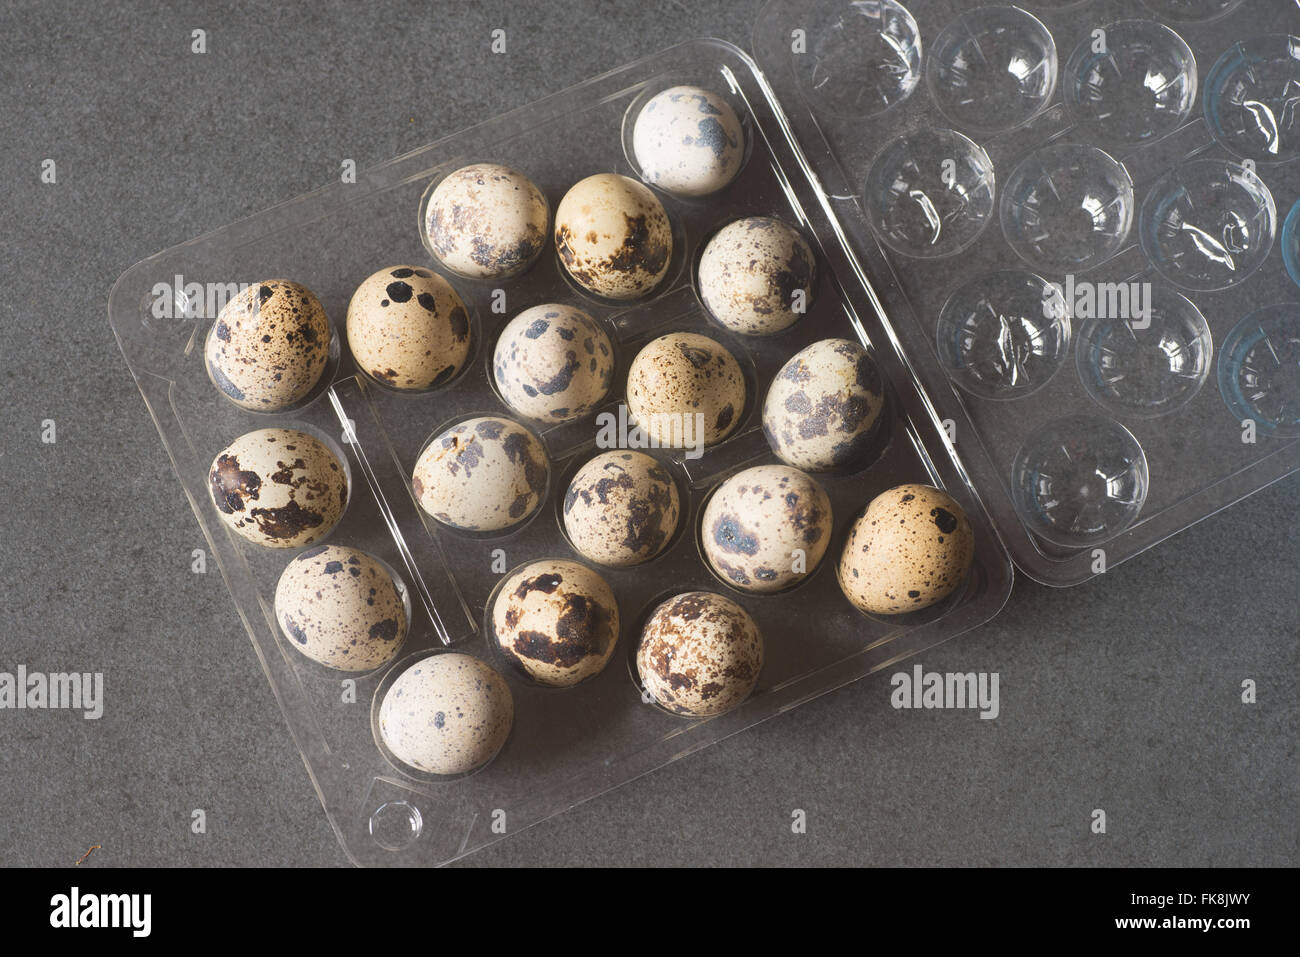 Grupo de huevos de codorniz Foto de stock